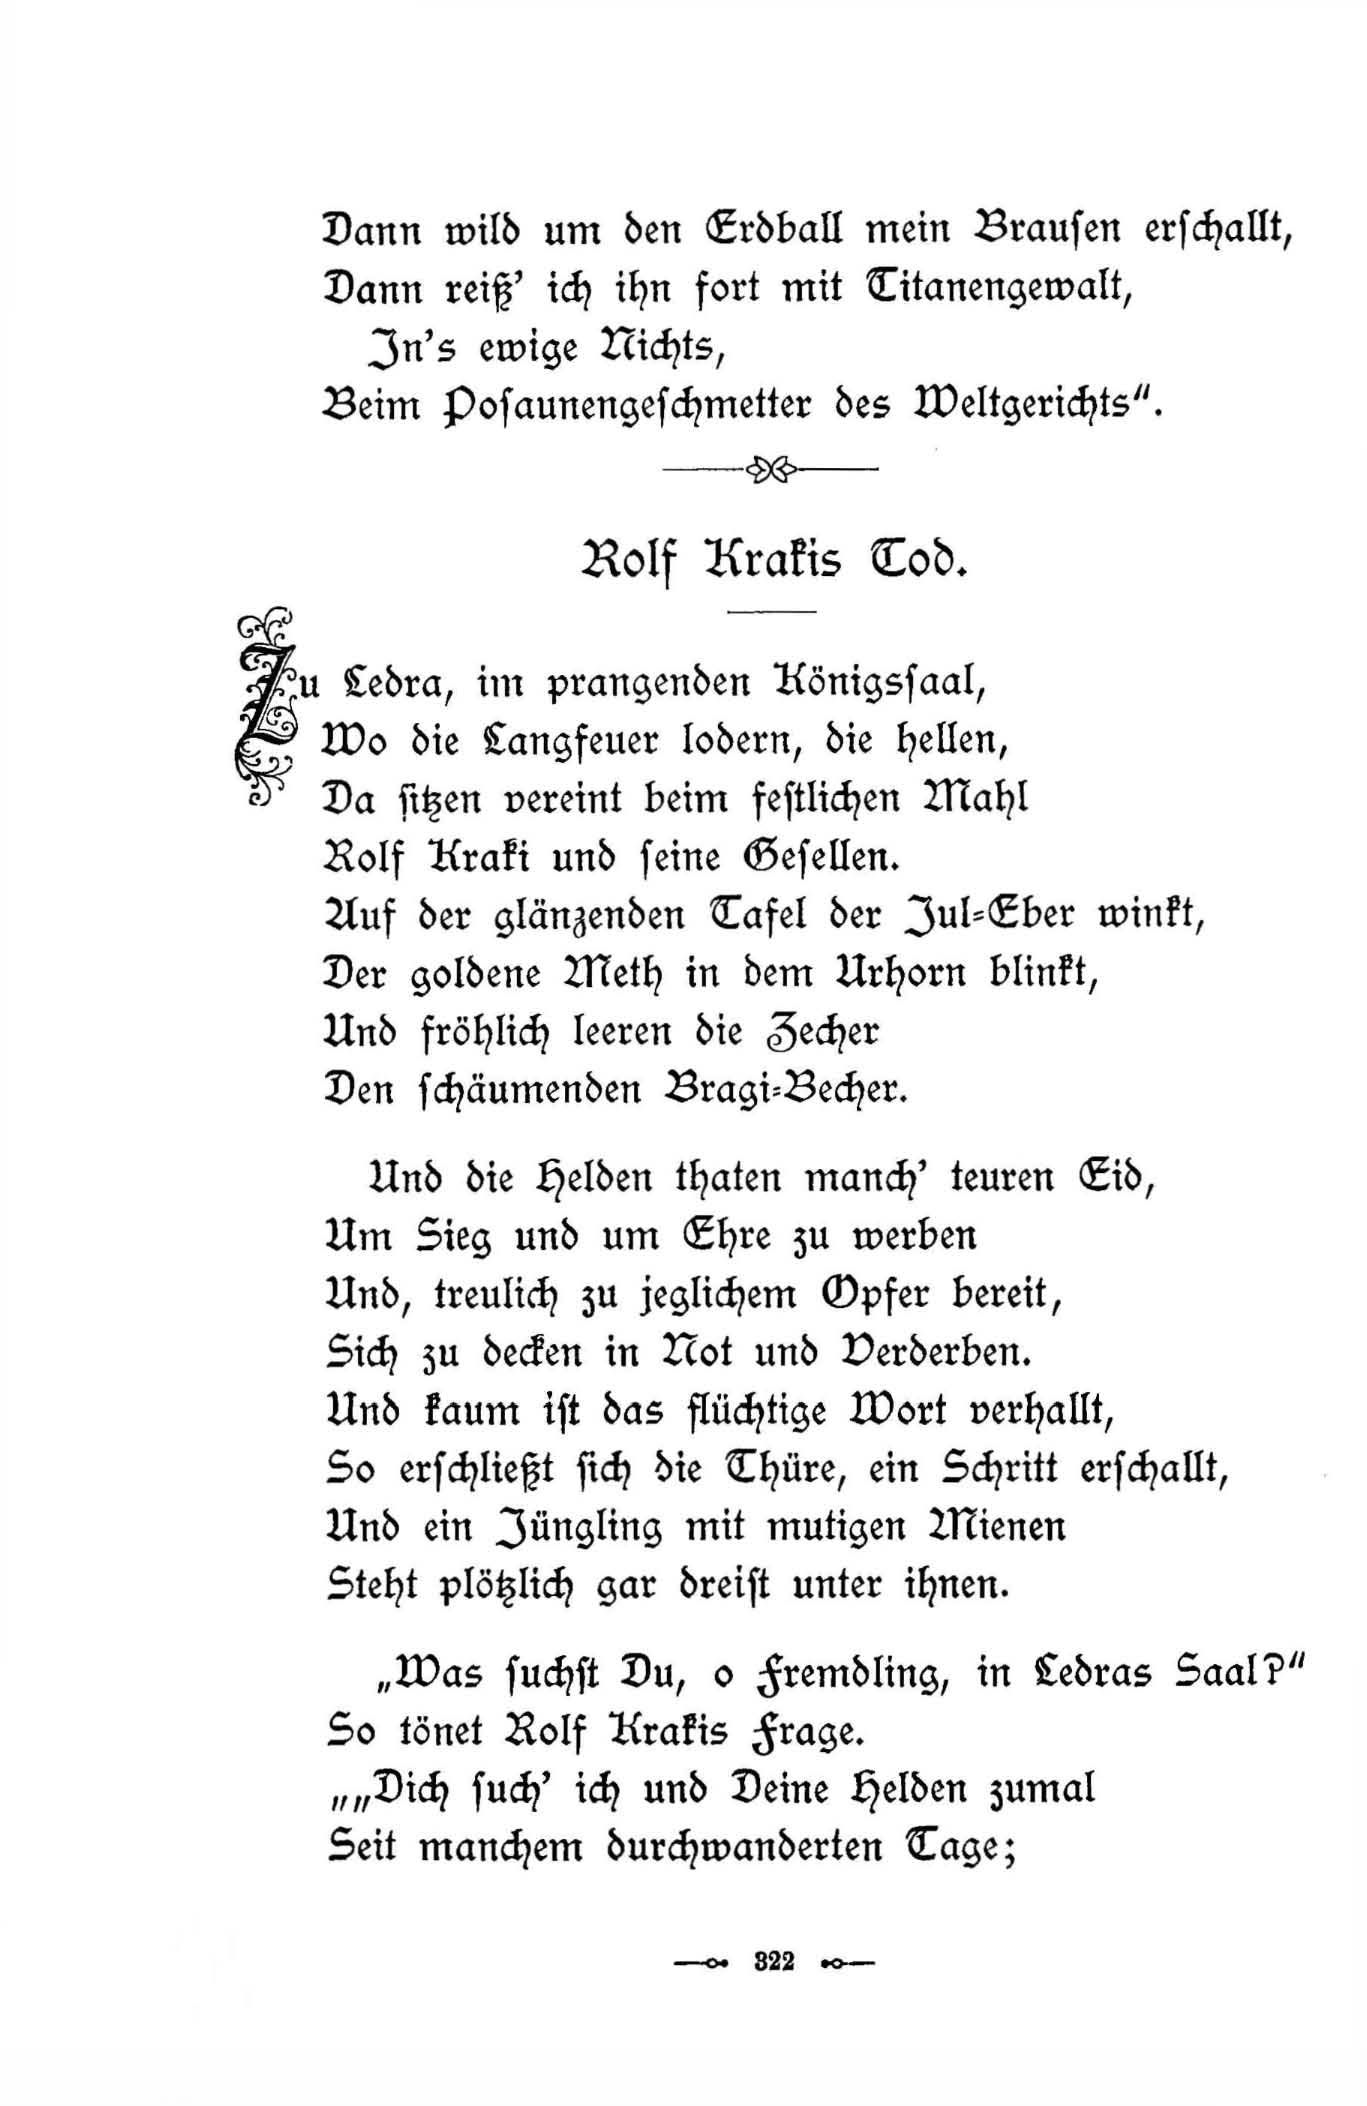 Sturm-Hymnus (1896) | 3. (322) Main body of text